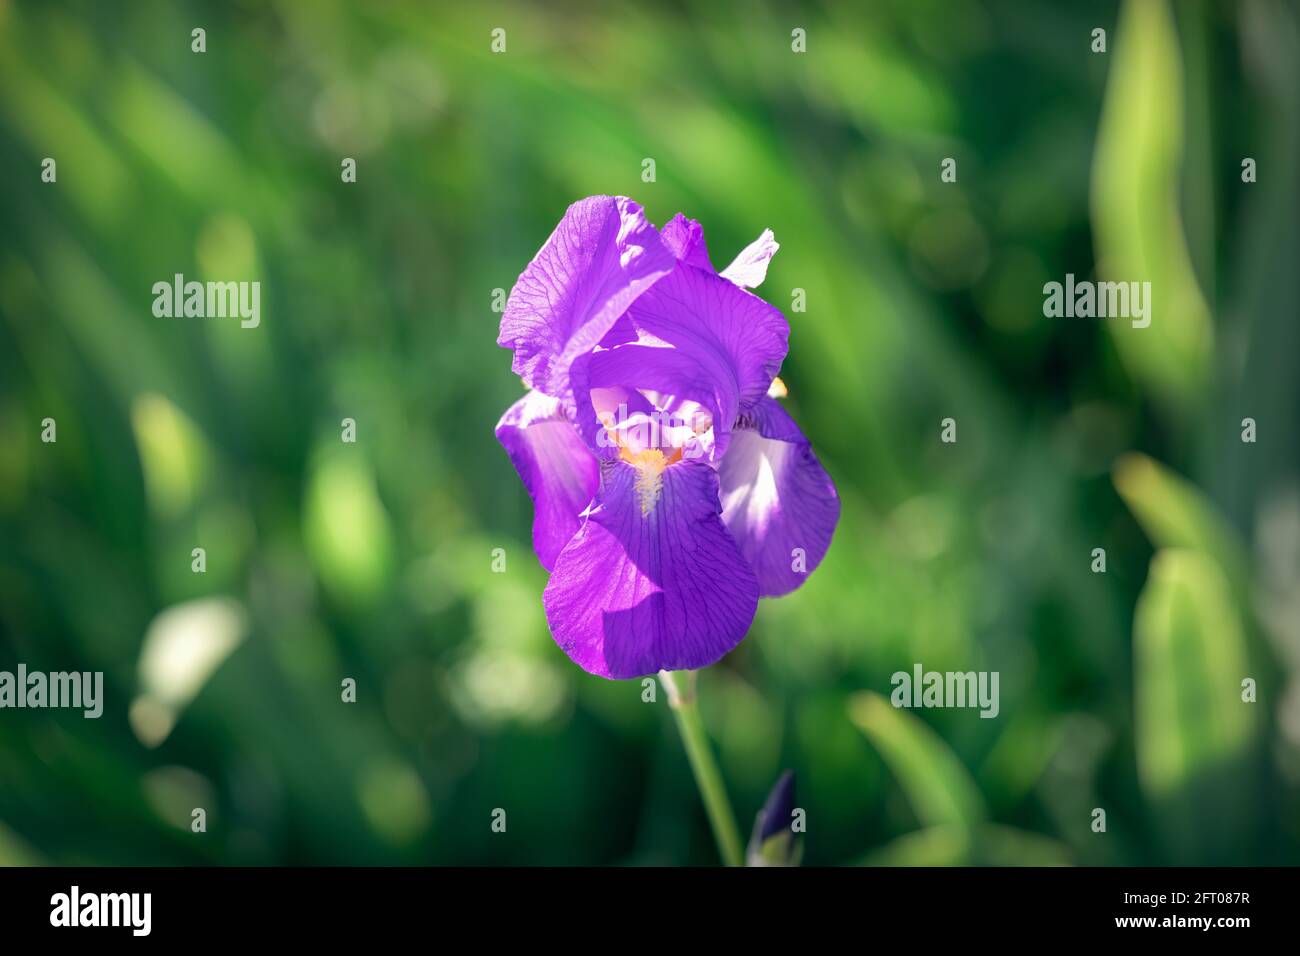 Magnifique fleur de l'iris violet (mise au point sur la fleur, arrière-plan bokeh) Banque D'Images